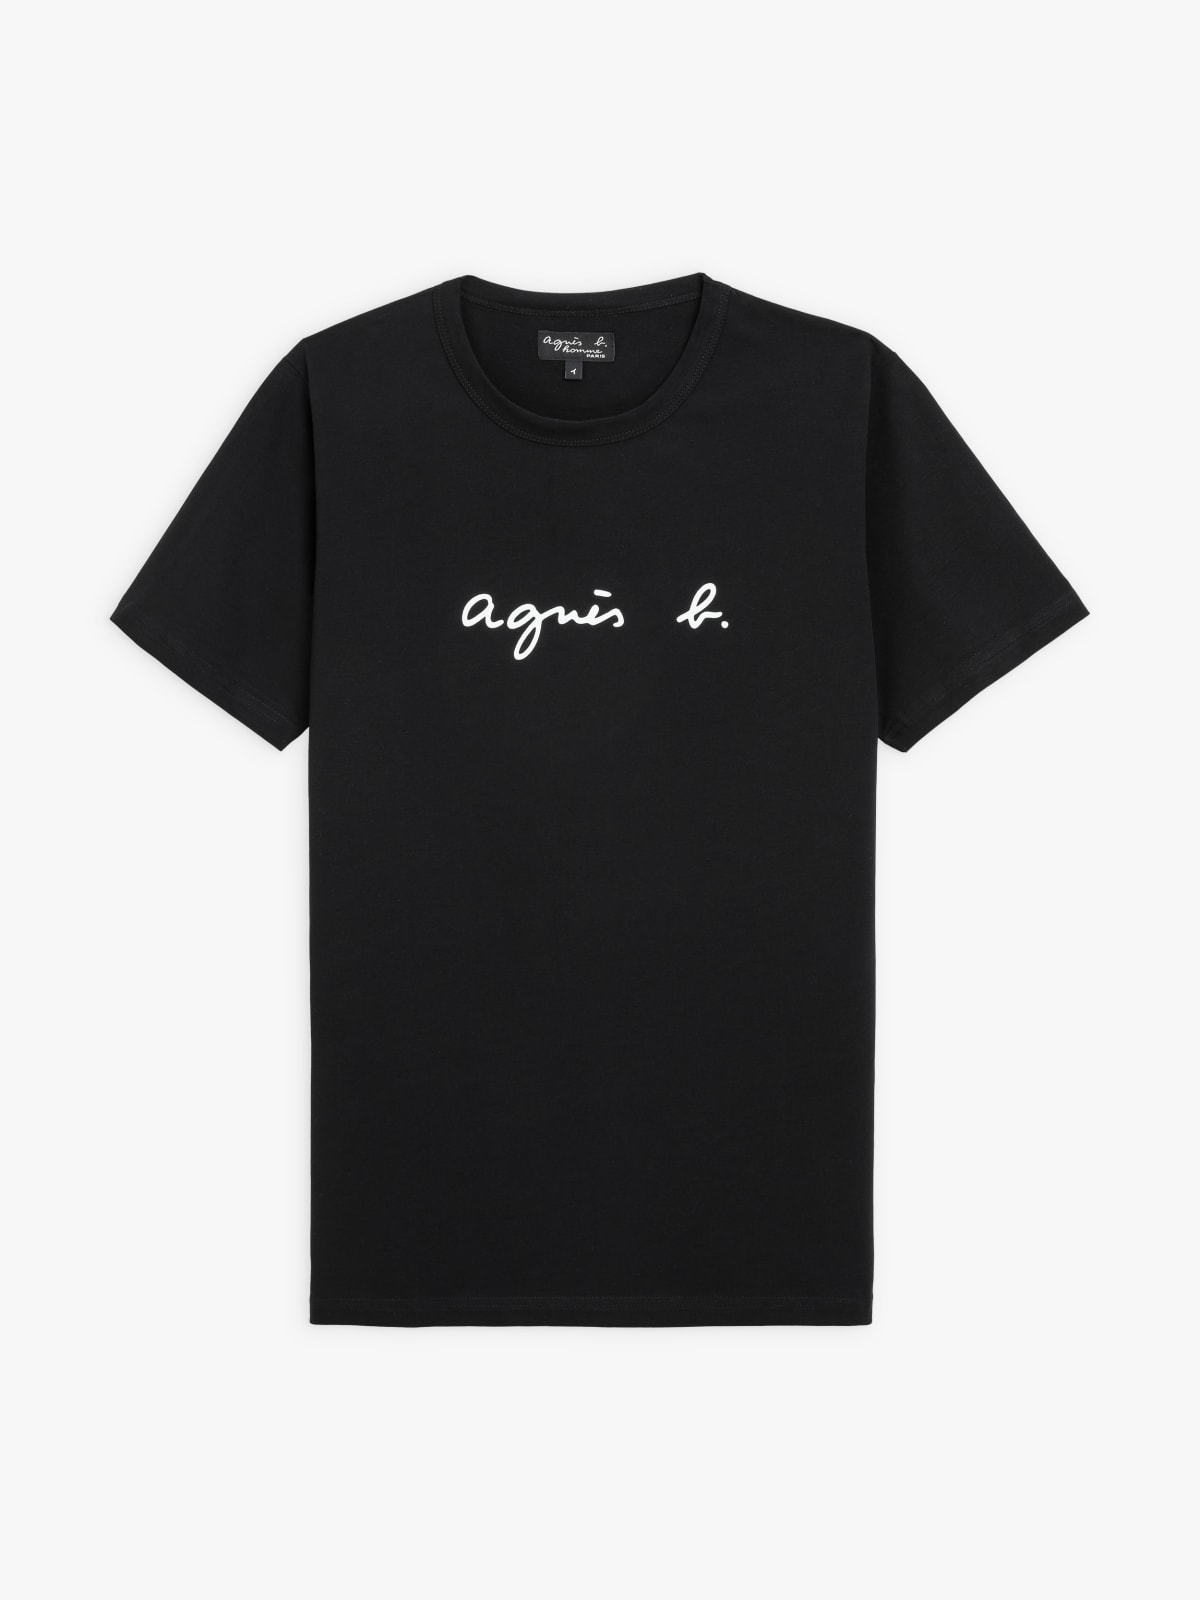 black short sleeves Coulos "agnès b." t-shirt